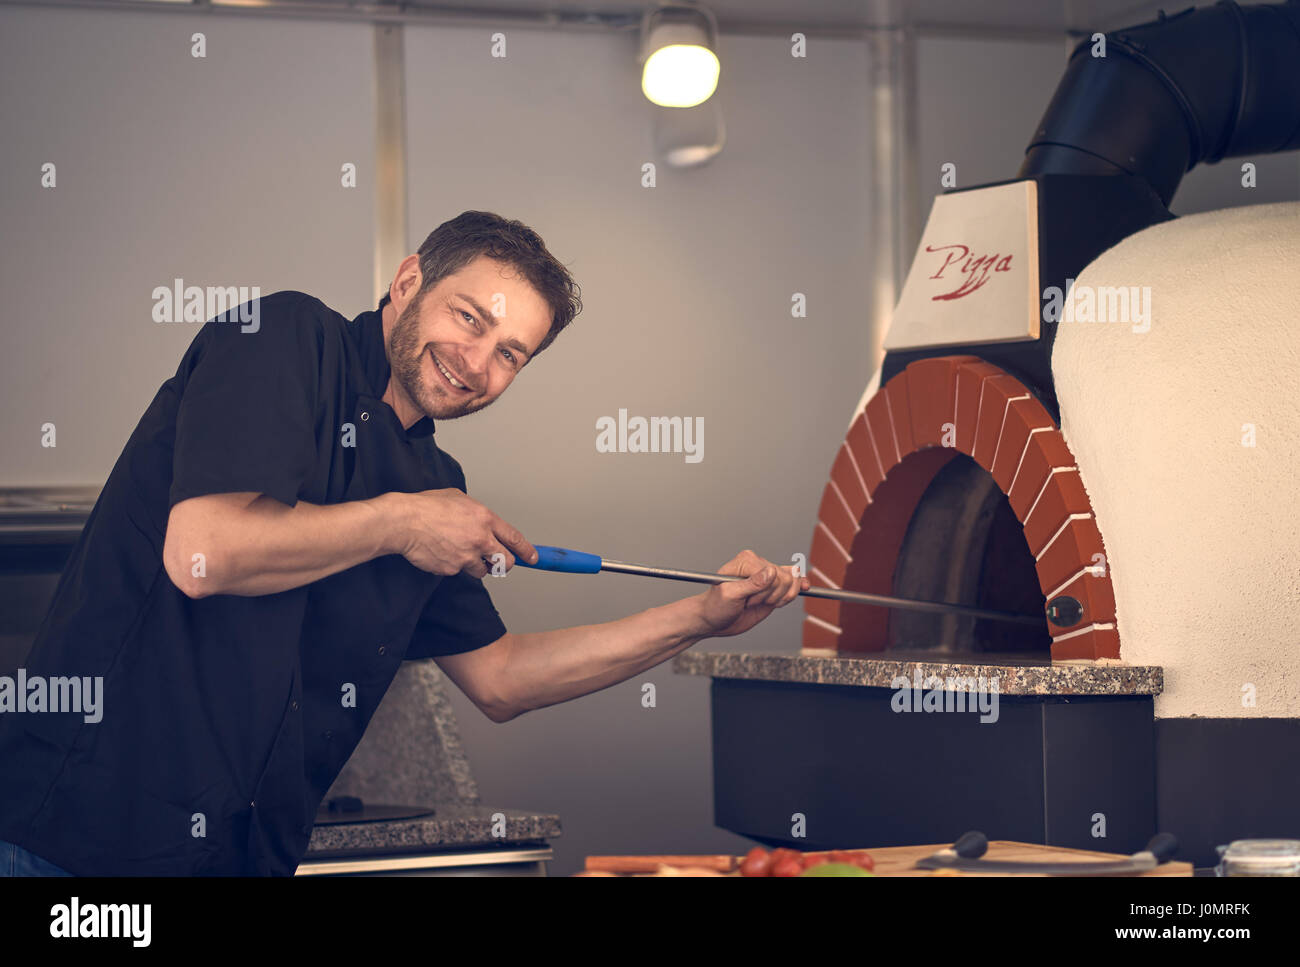 Smiling chef cuisson ou cuisson flamme une pizza italienne dans un four à bois moderne une pizzeria Banque D'Images